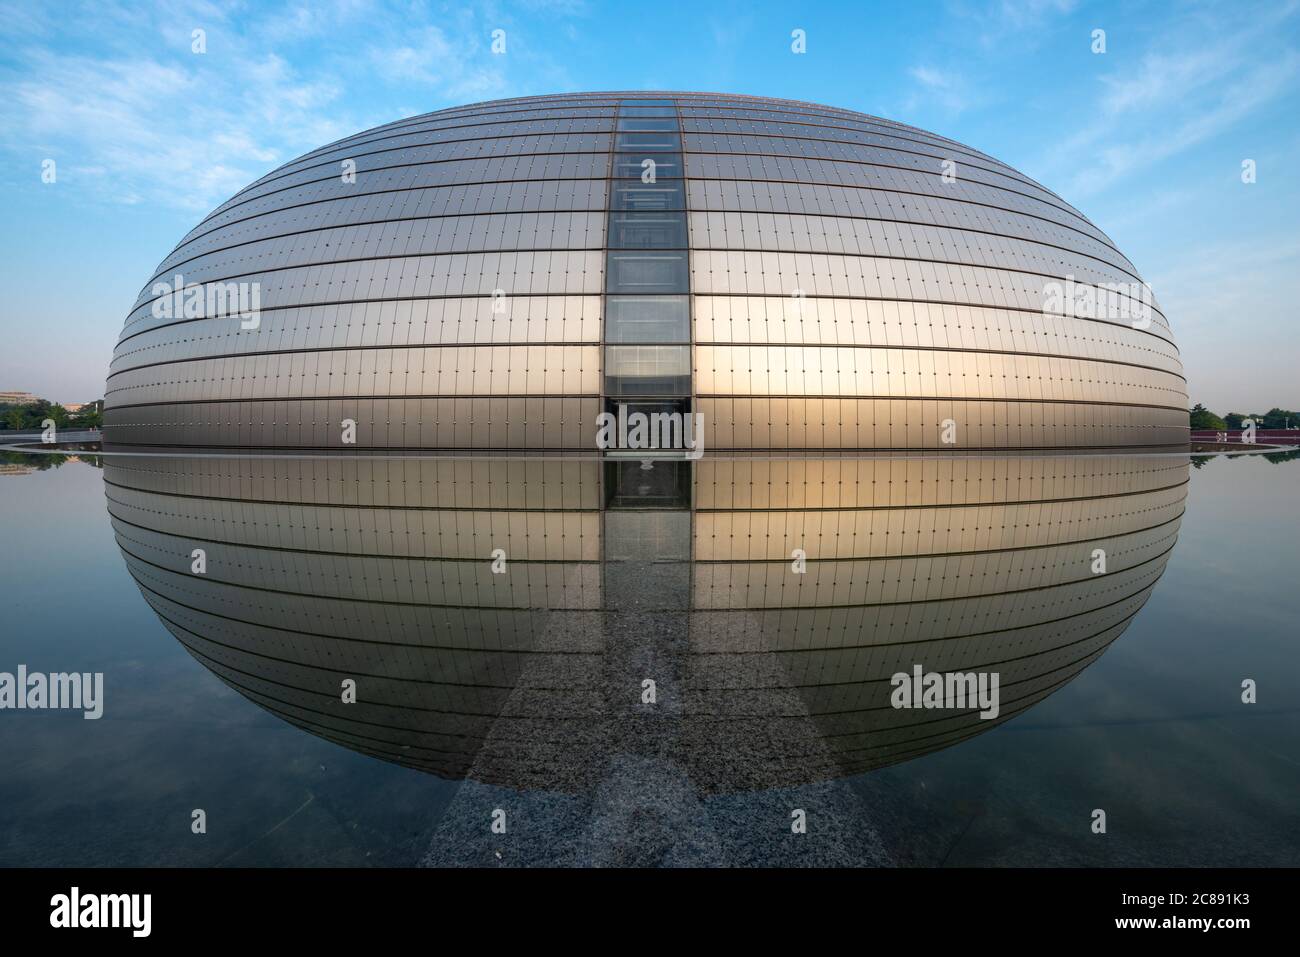 PECHINO, CINA - 24 GIUGNO 2014: Centro Nazionale per le arti dello spettacolo. Il design futuristico ha suscitato polemiche quando il teatro è stato completato in 2 Foto Stock